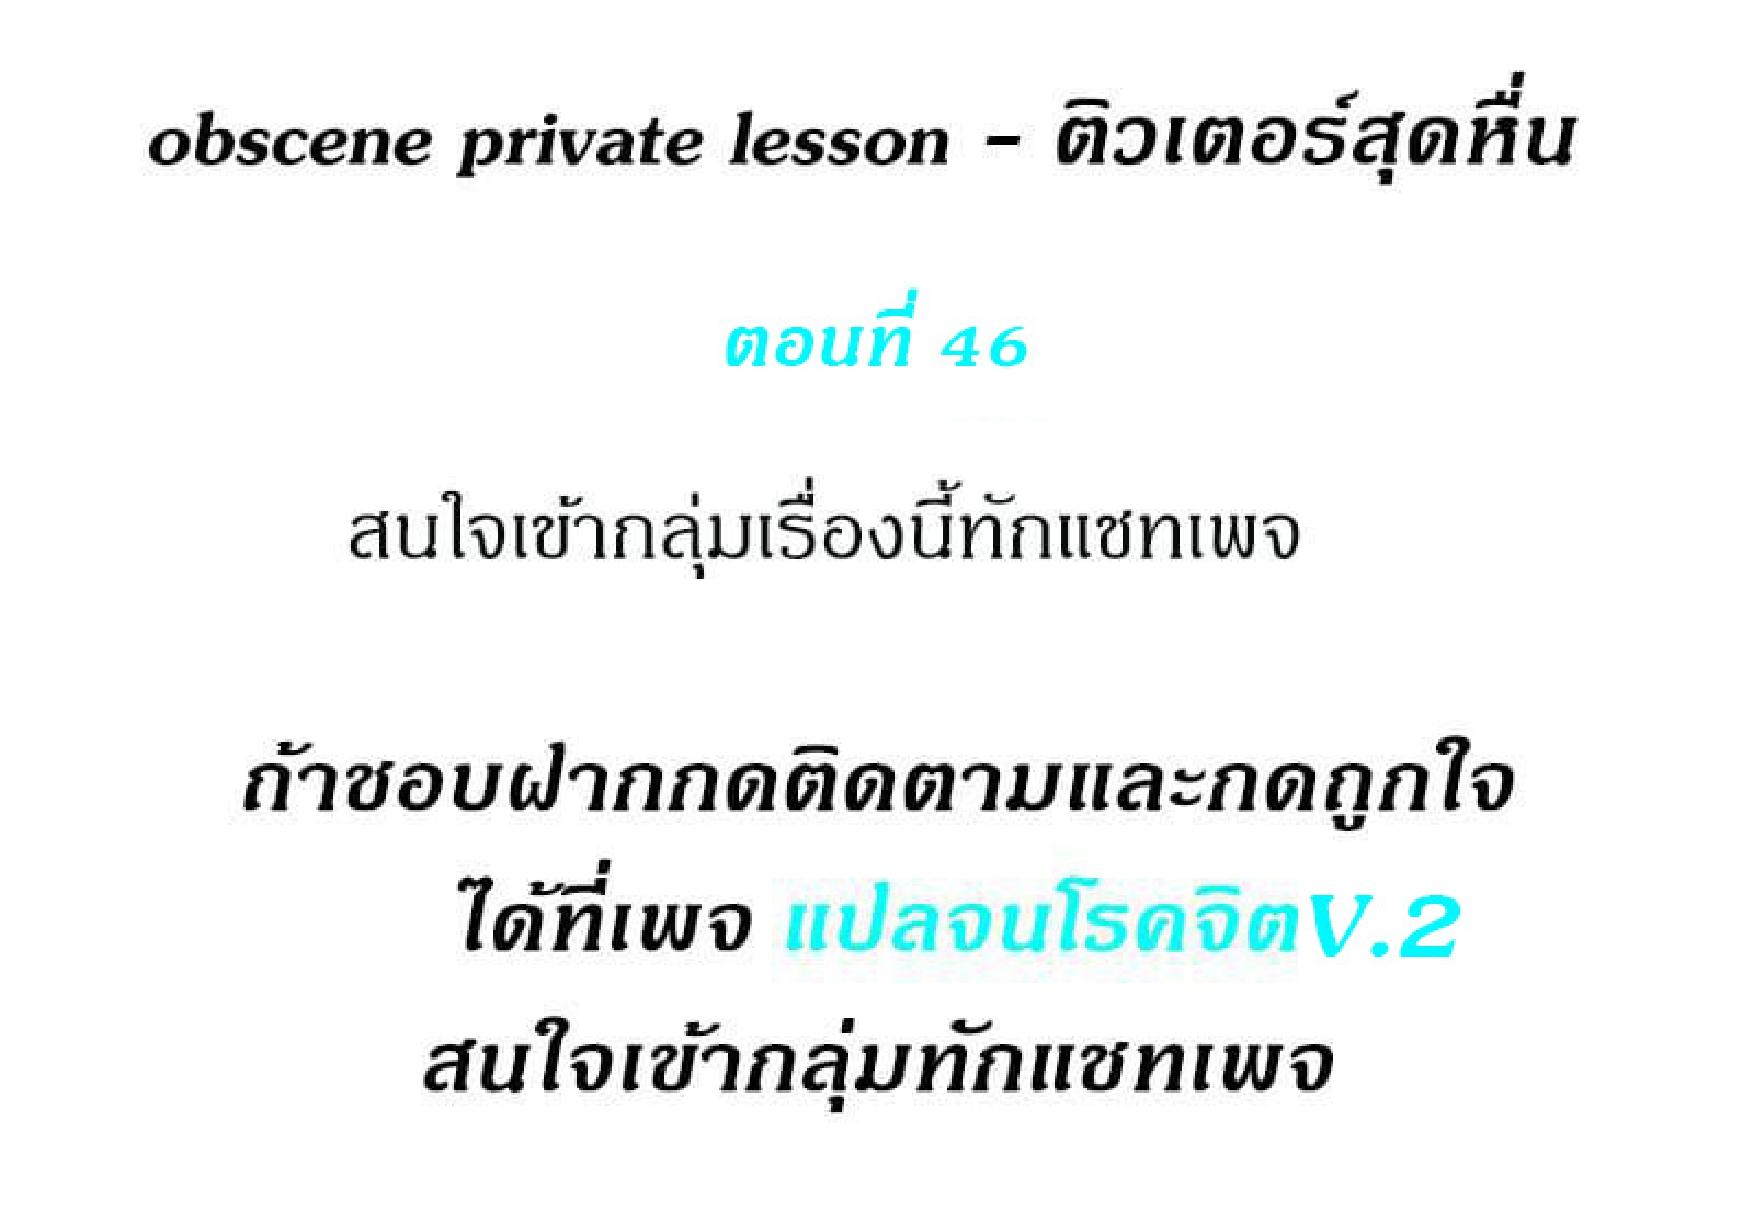 Obscene Private Lesson 46 02